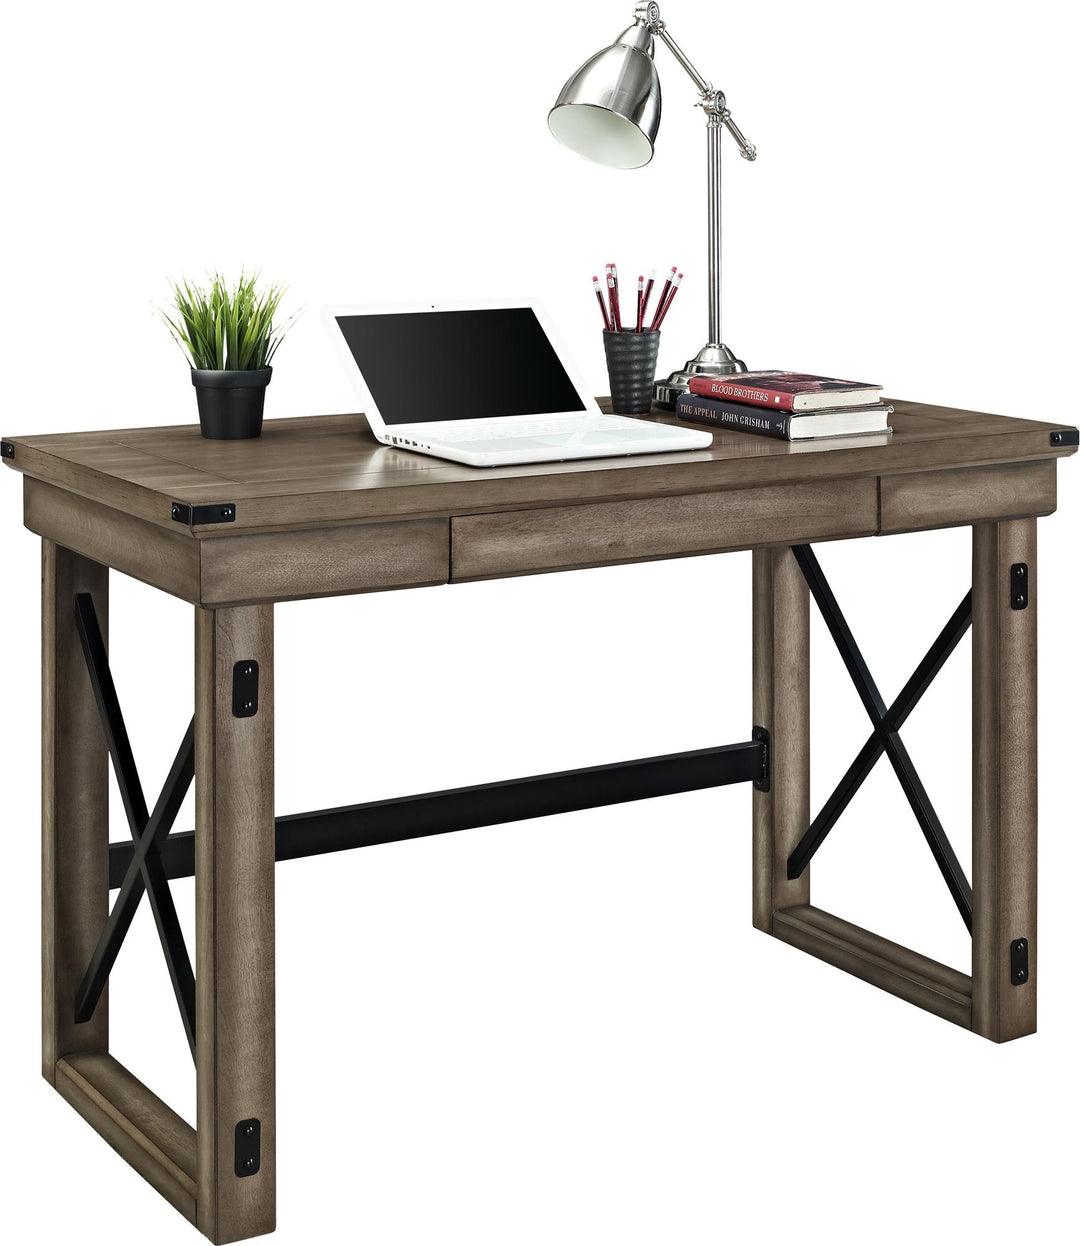 Wildwood Wood Veneer Computer Desk with Storage Drawer - Rustic Gray